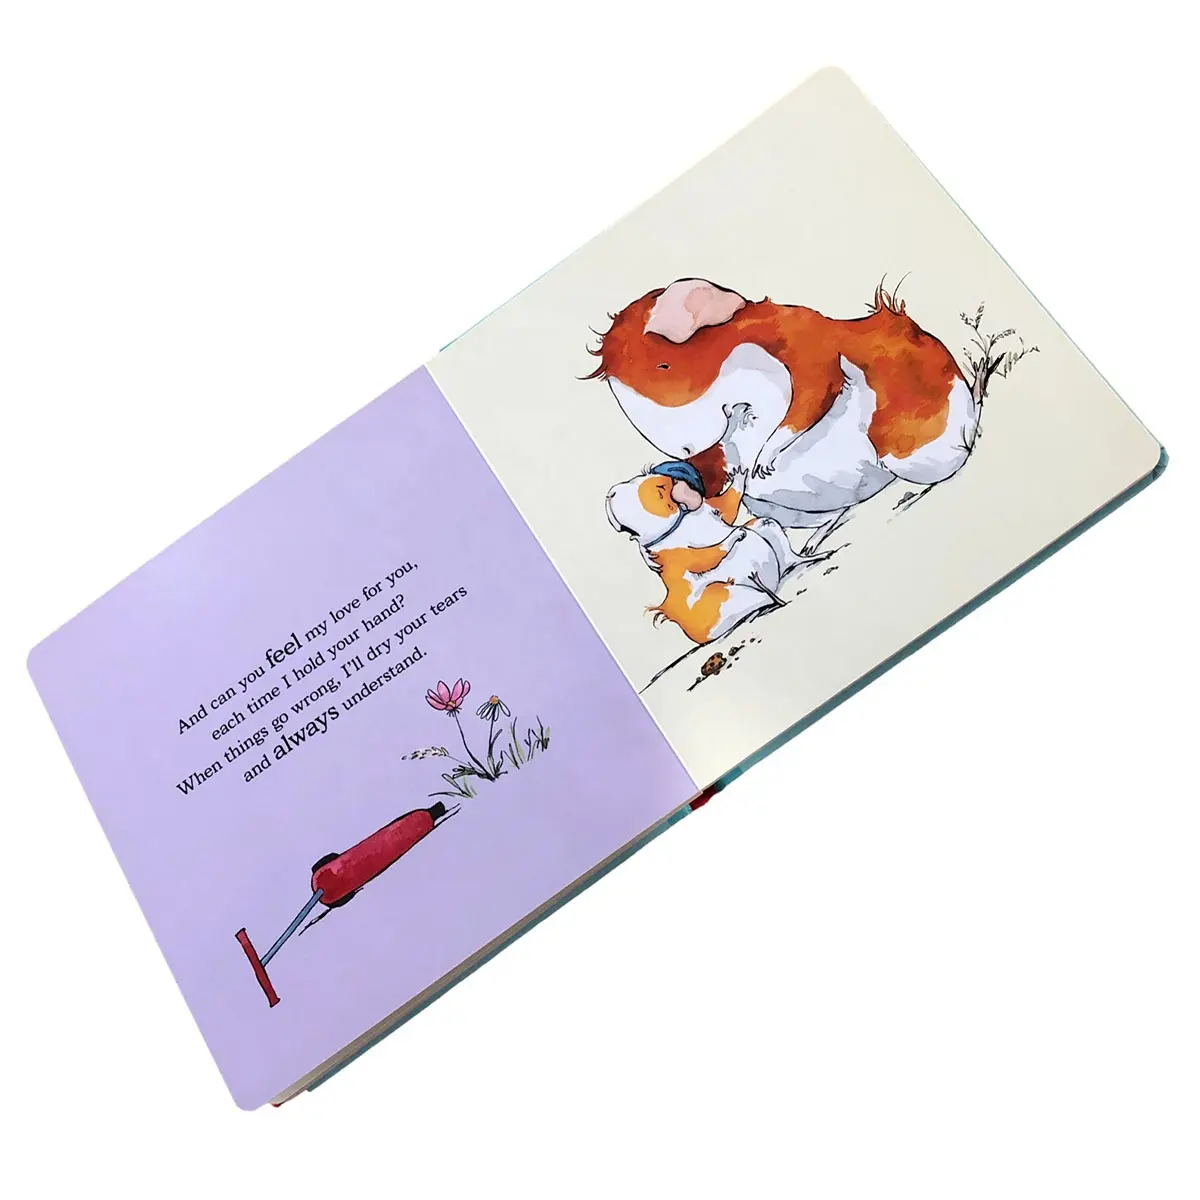 Kağıt ve karton baskı için renkli baskılı karton kağıt İslami çocuk kitapları toptan tedarikçileri